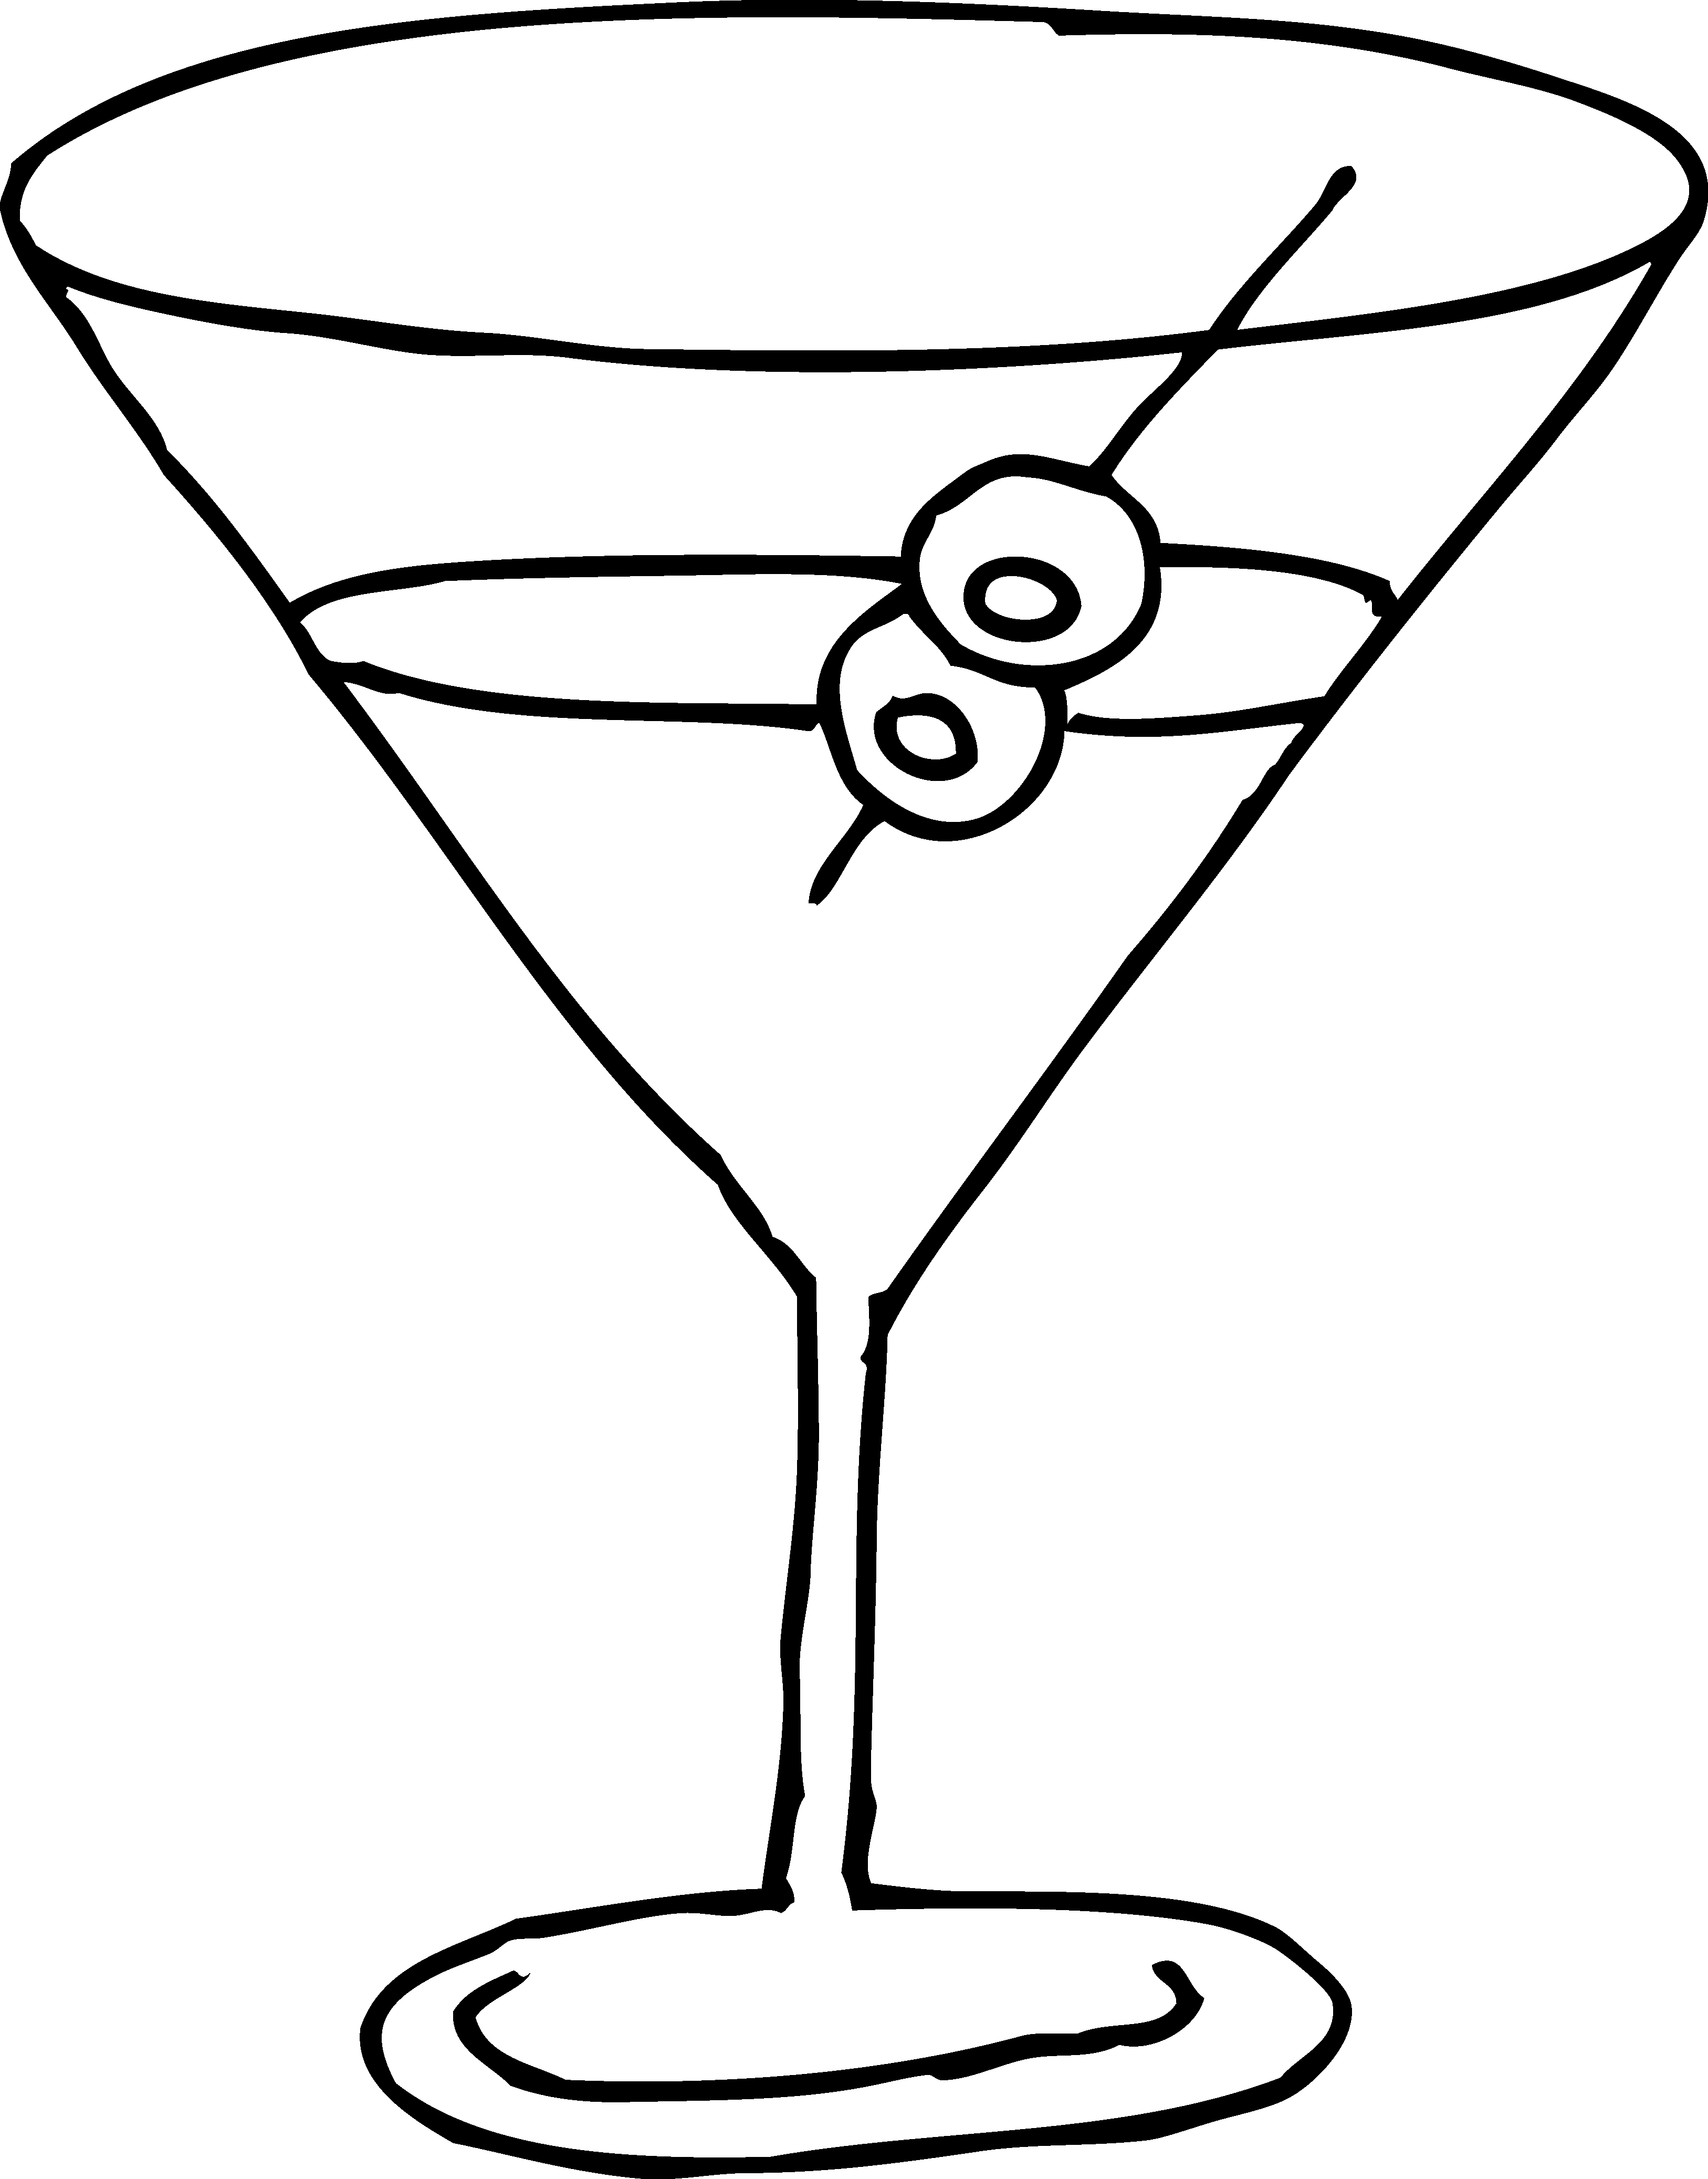 Martini clip art free - ClipartFox